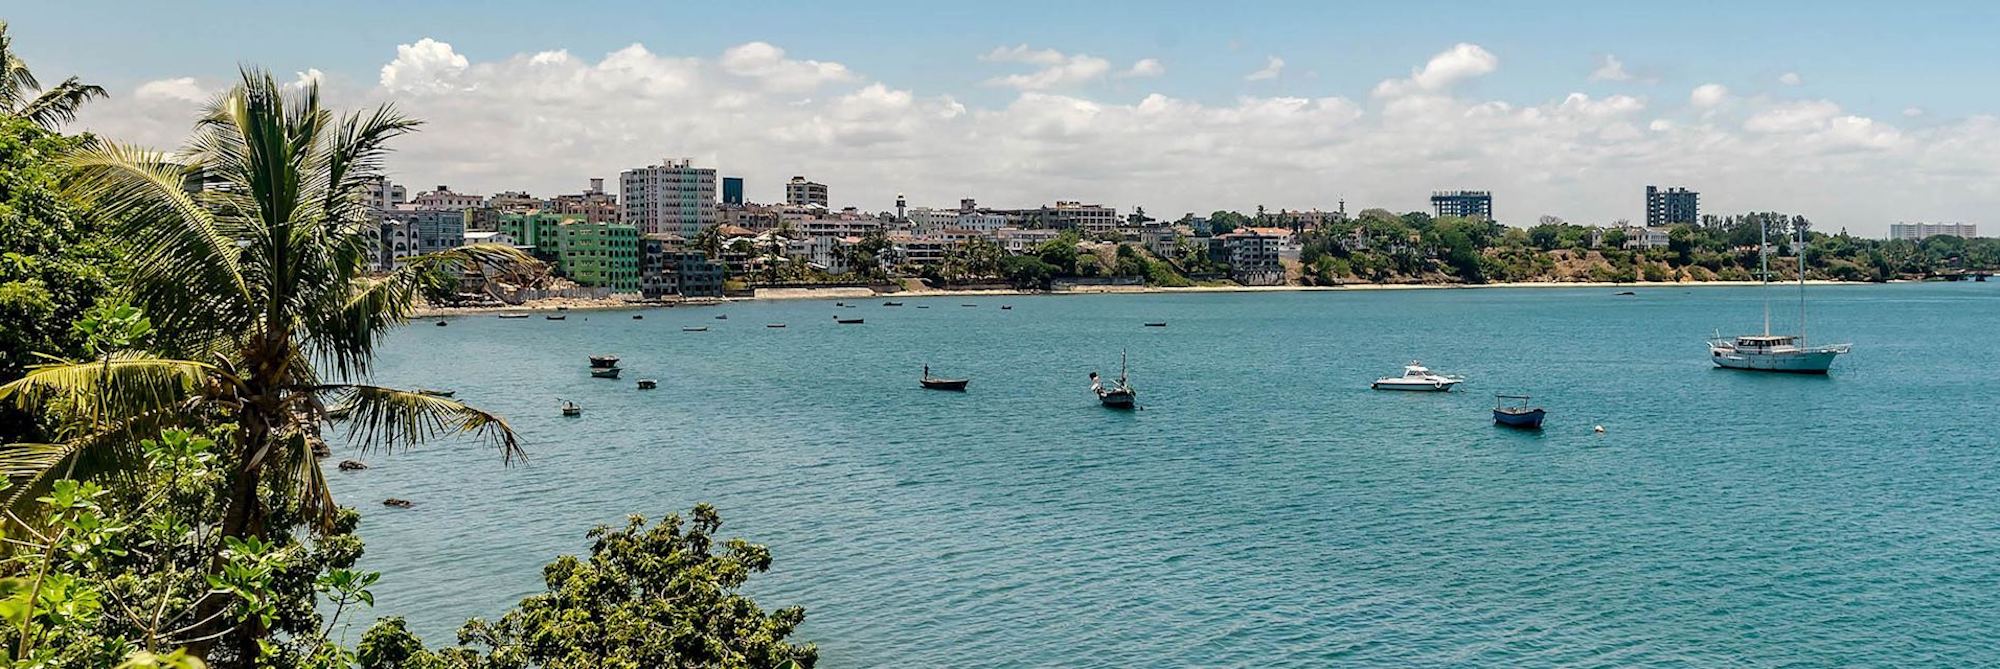 Mombasa, Kenya | Facts about Mombasa beach